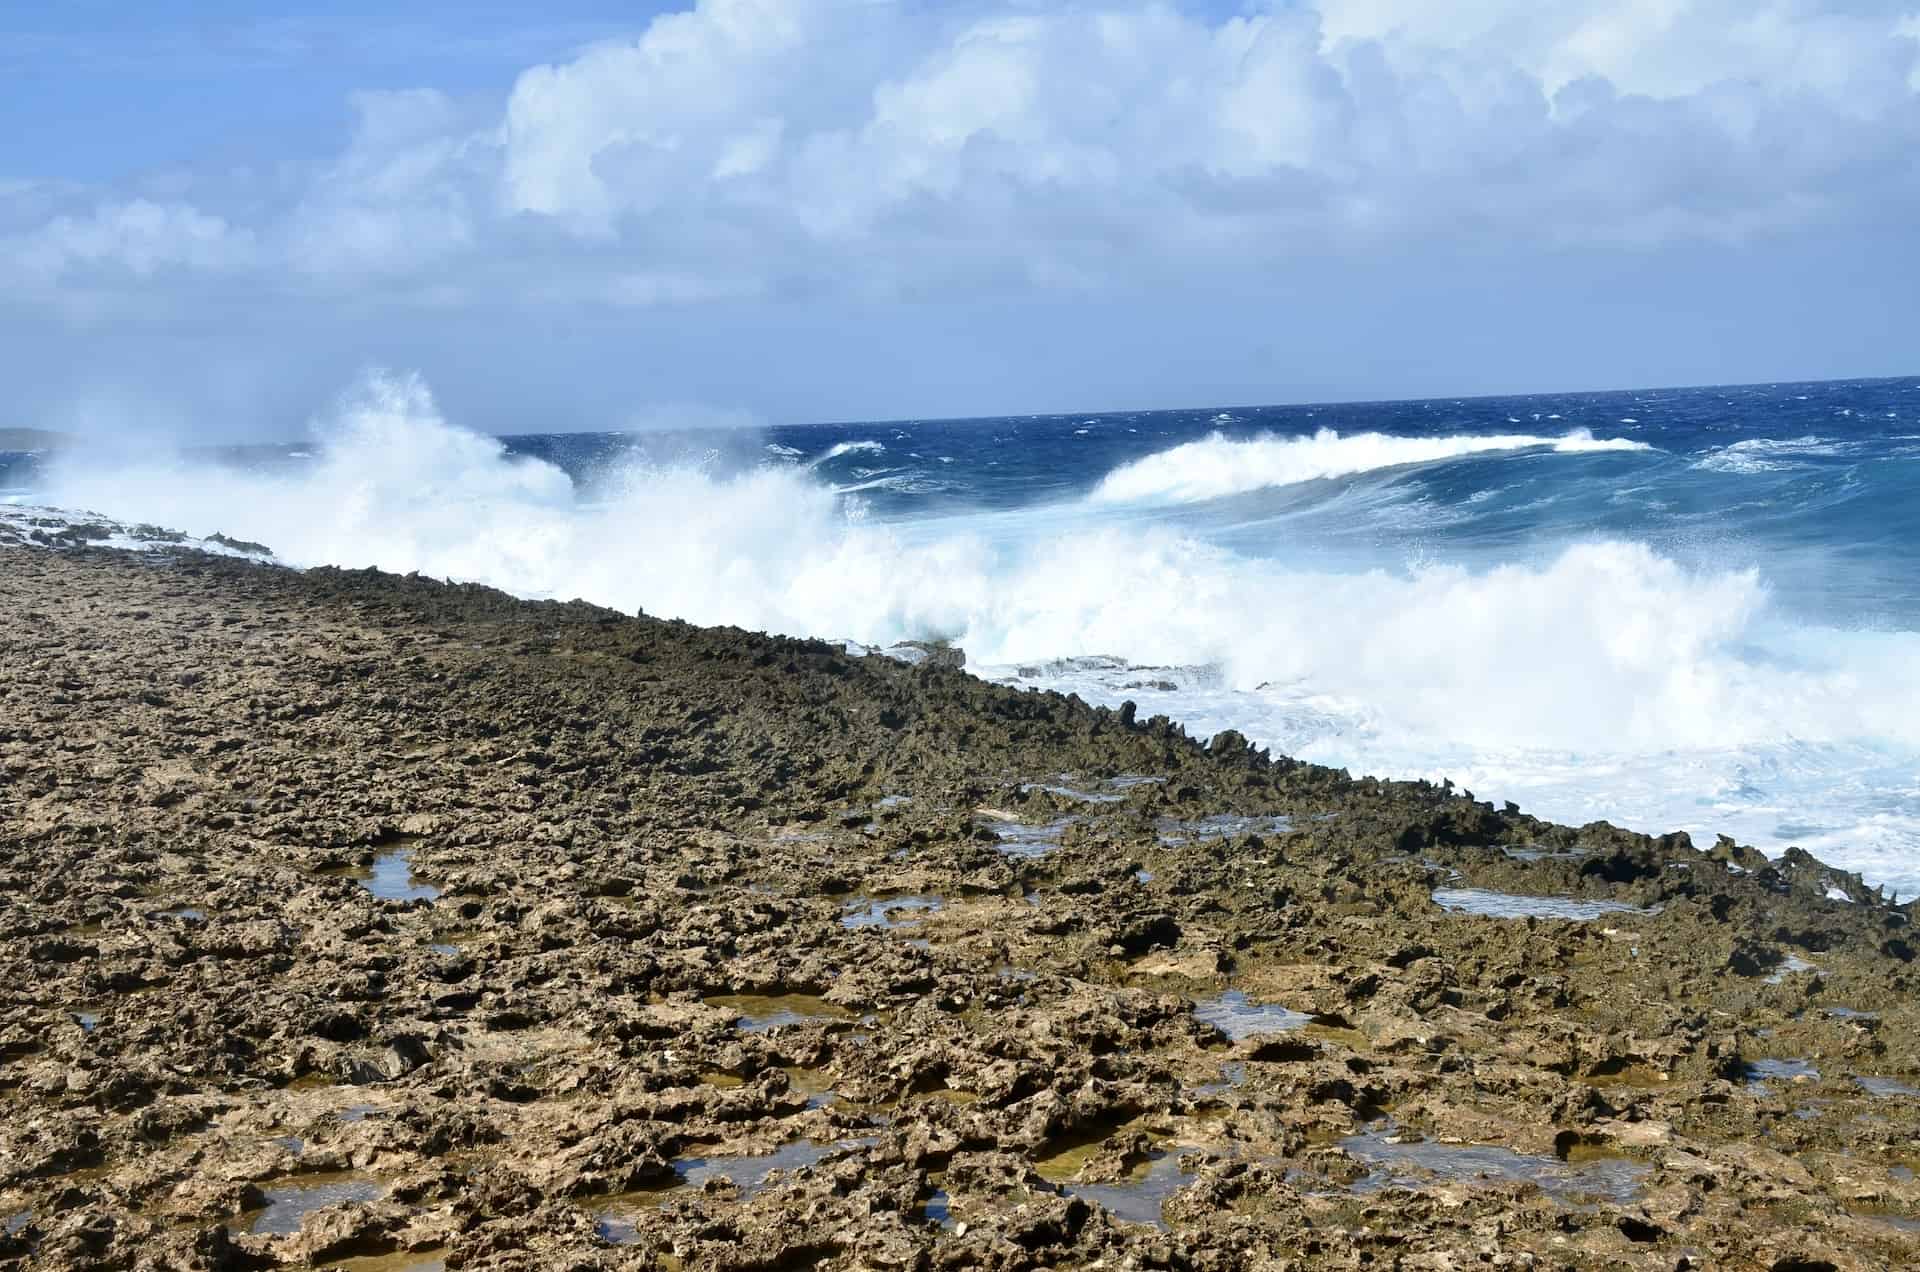 Waves hitting the rocks at the Bushiribana Gold Mill ruins in Paradera, Aruba